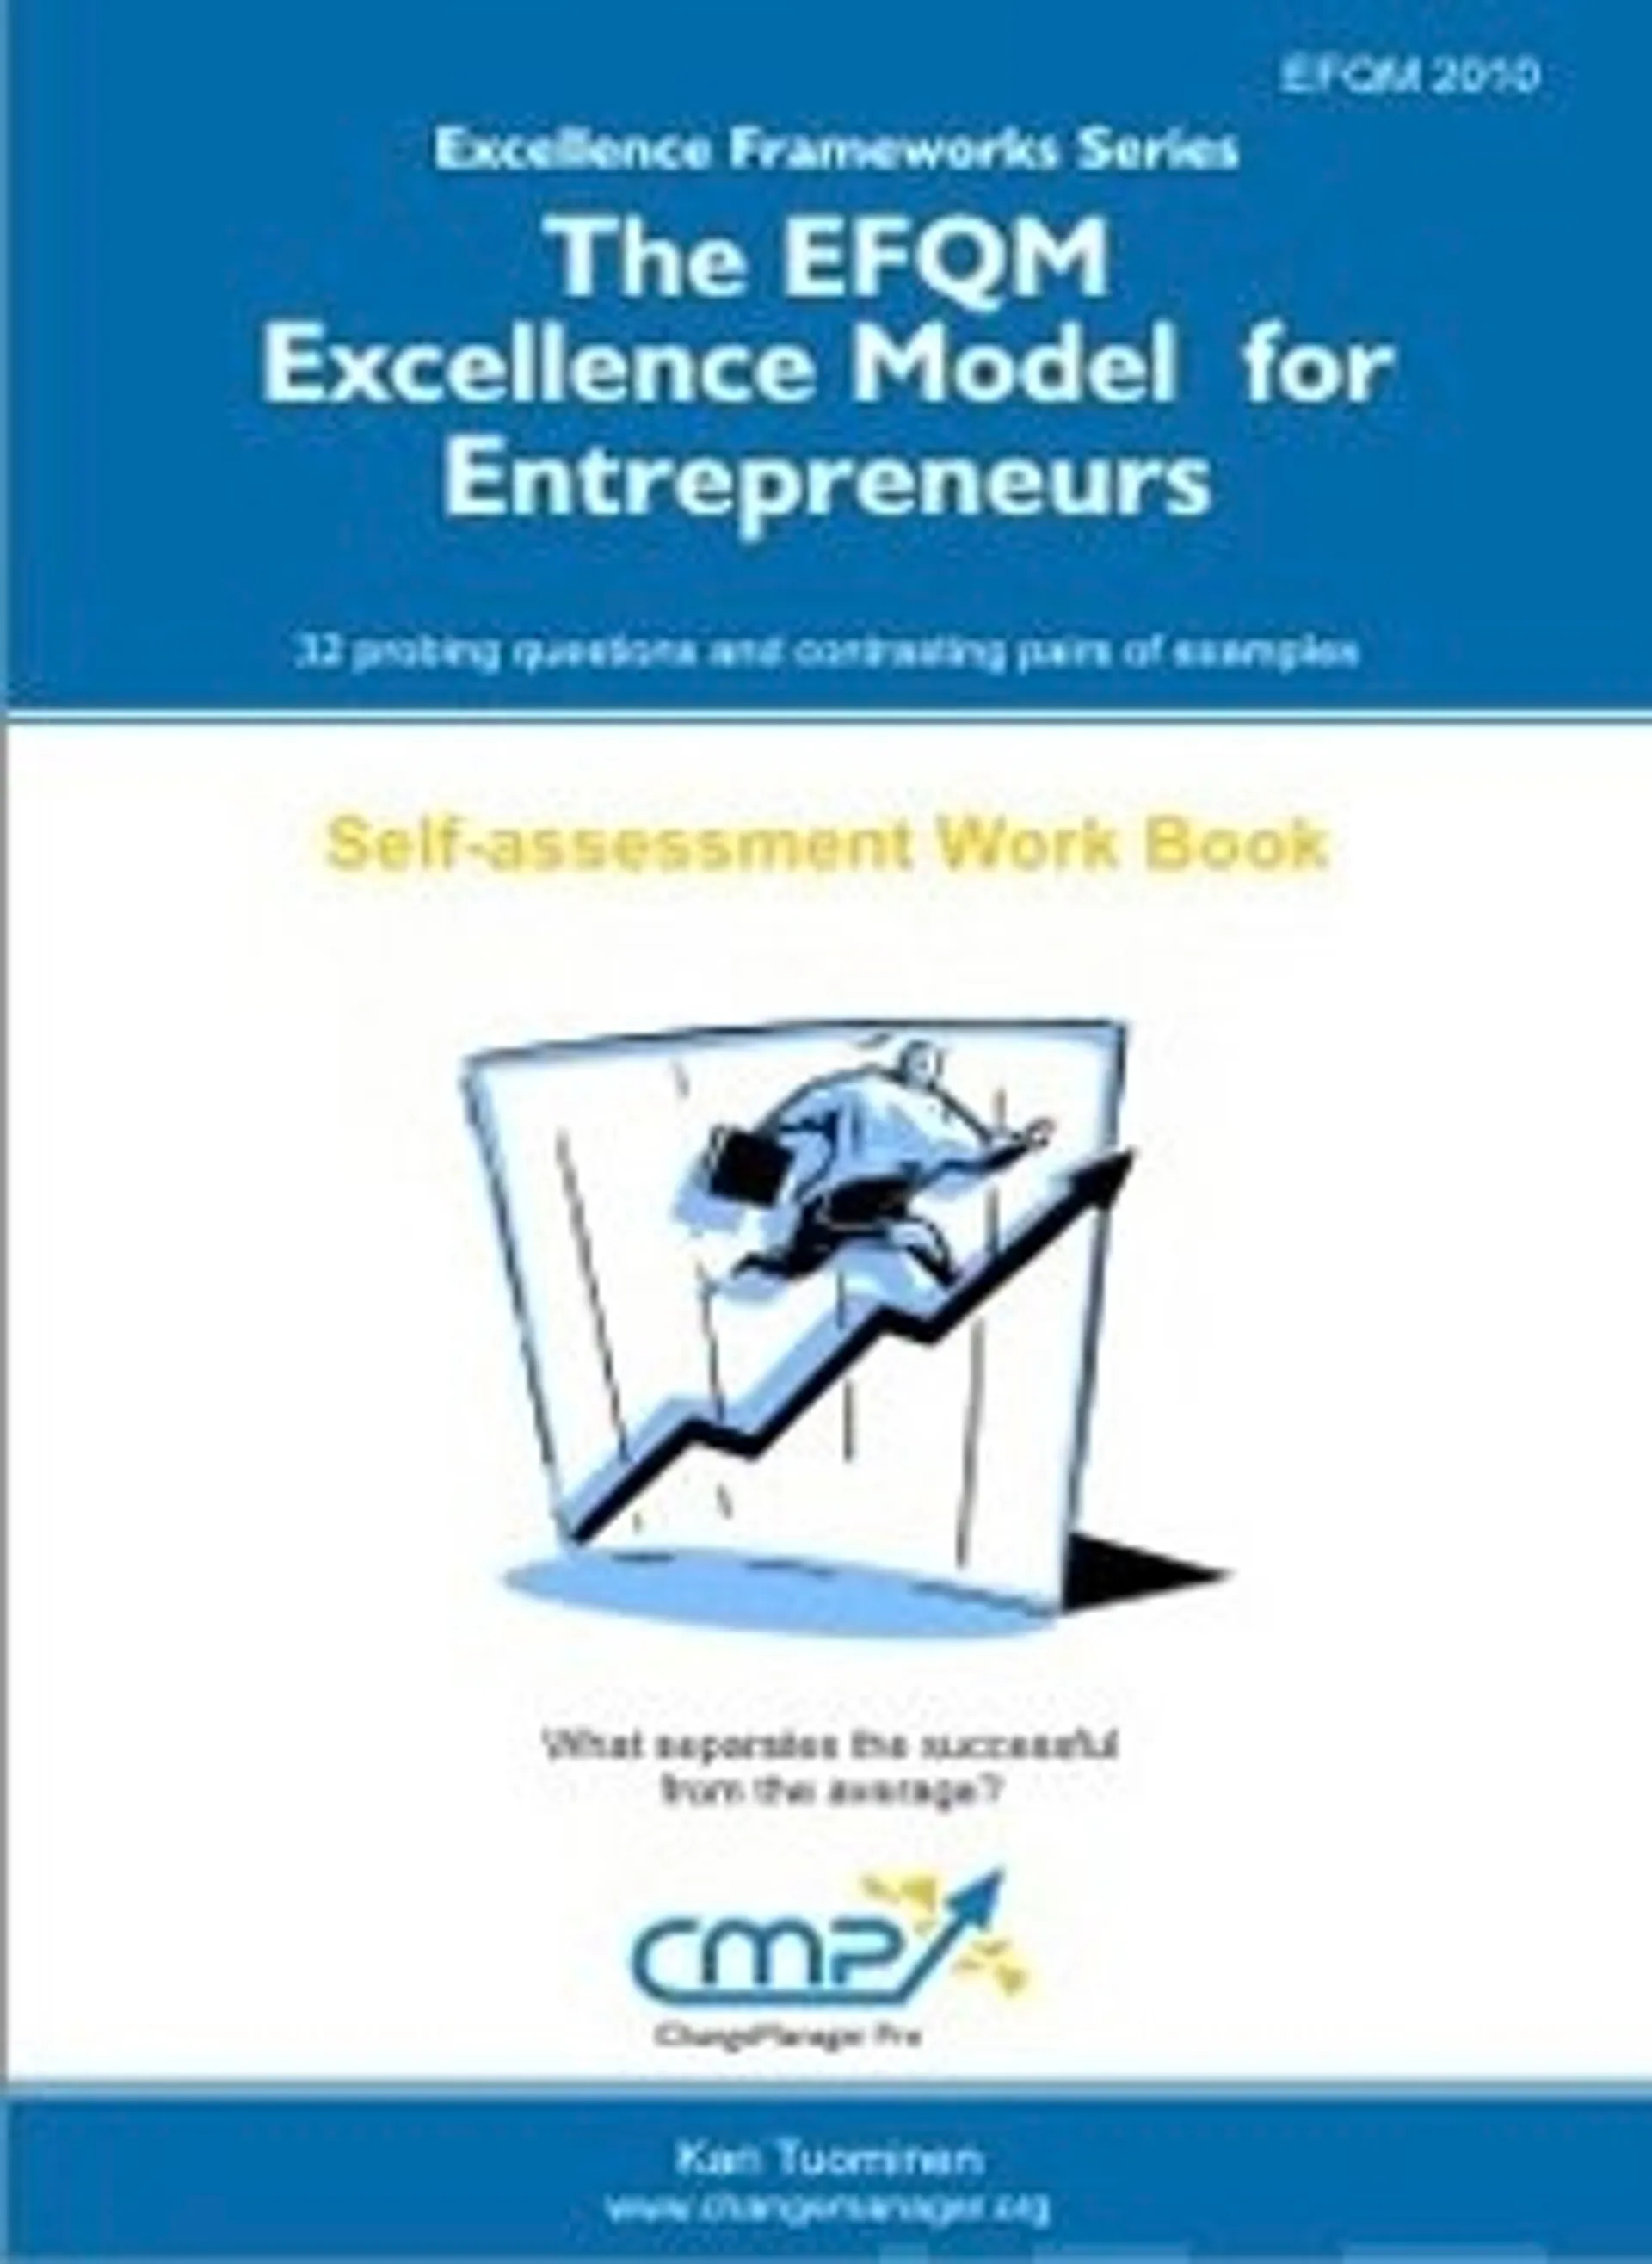 The EFQM Excellence Model for Entrepreneurs - EFQM 2010